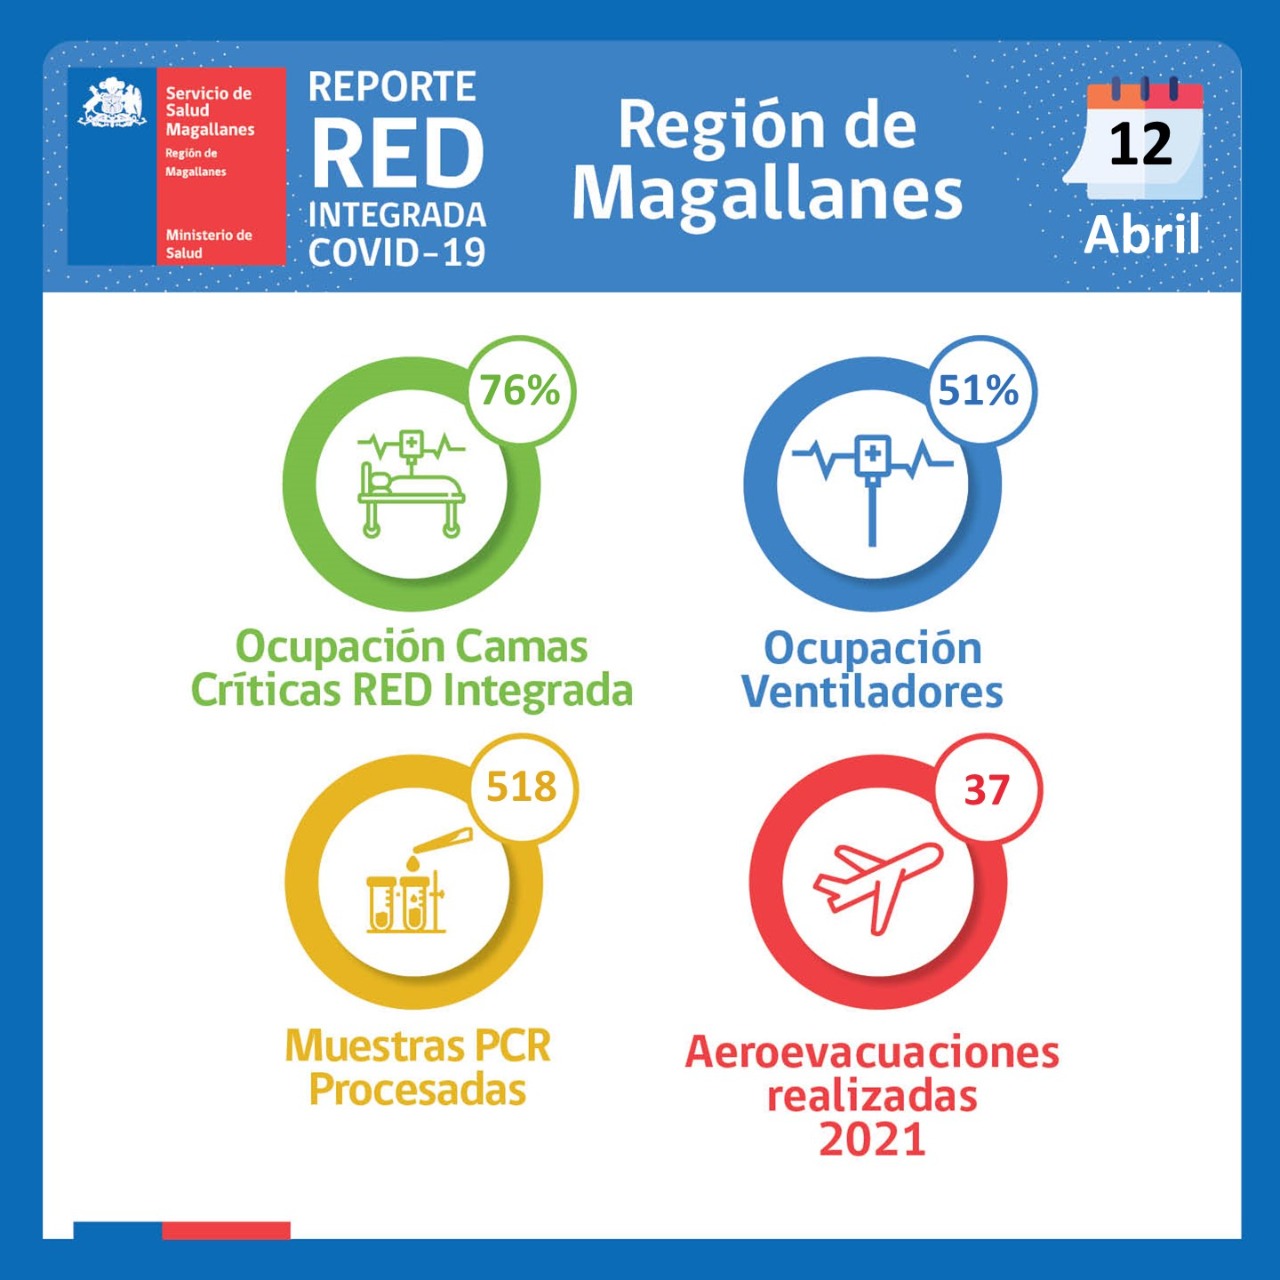 Estado de la red Integrada Covid19 en Magallanes al lunes 12 de abril